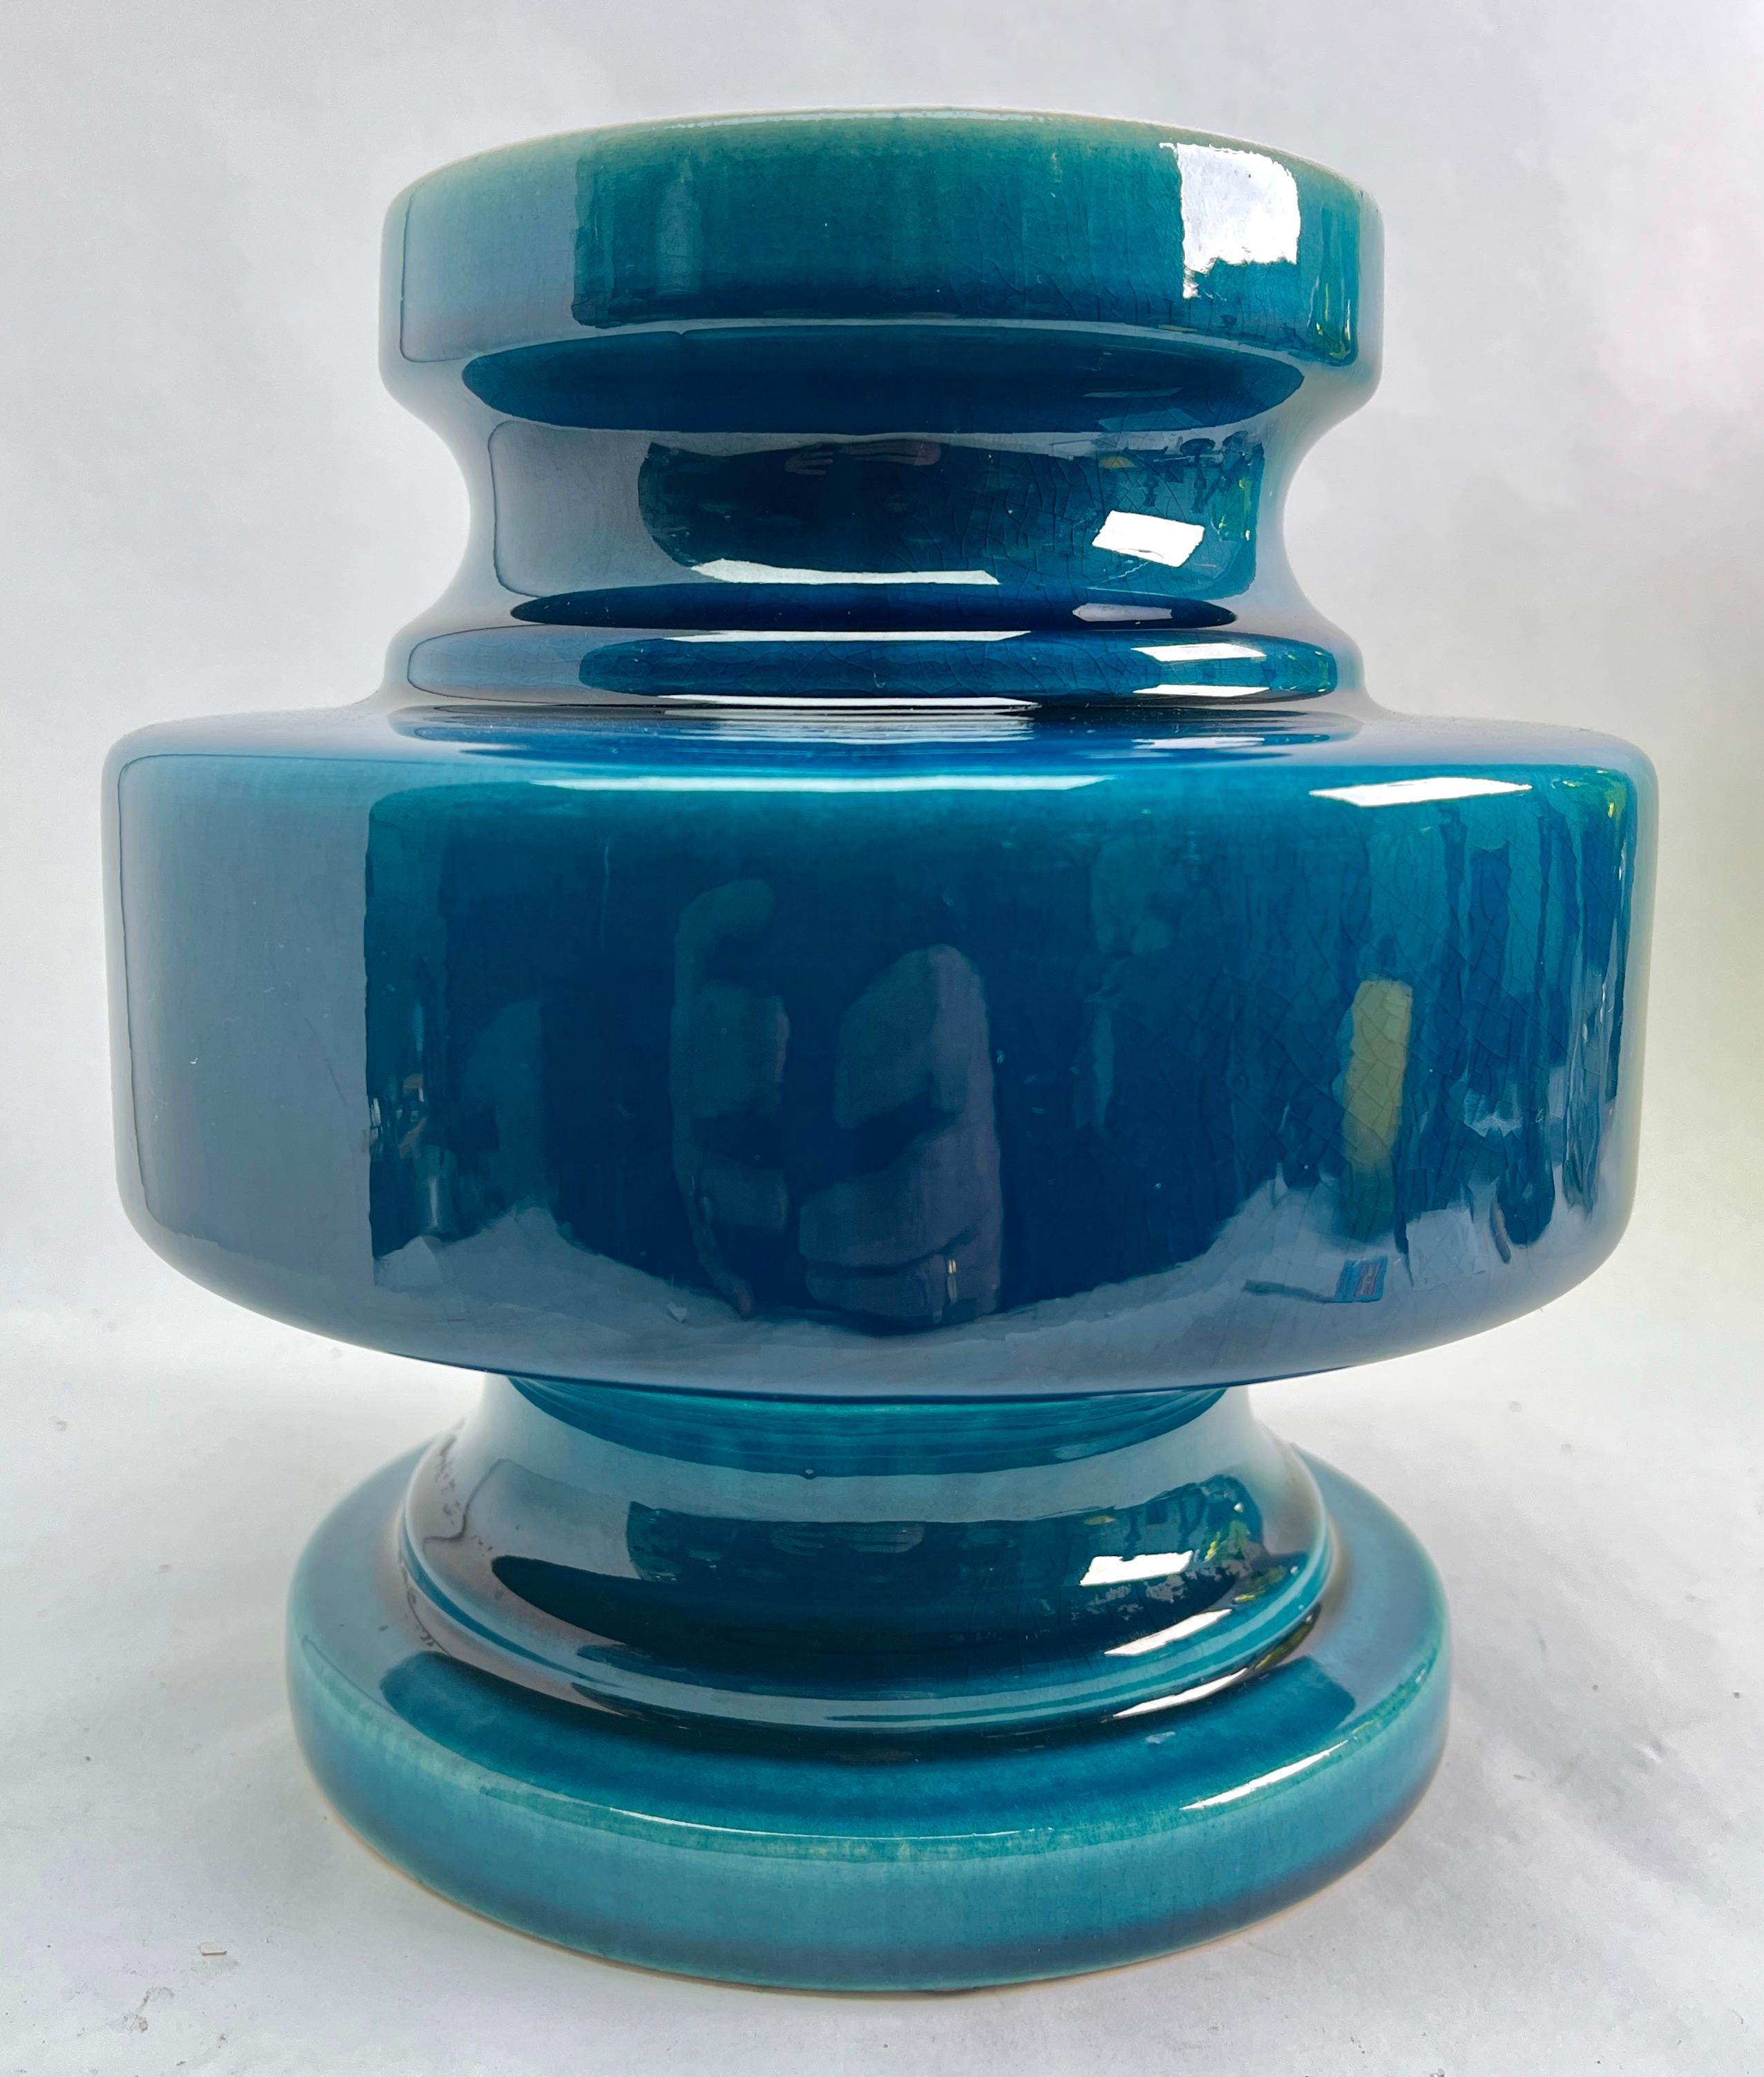 Inspiré d'une technique séculaire de la céramique chinoise, cet élégant vase est d'une teinte turquoise brillante et spectaculaire, avec une fine glaçure craquelée. 

La photographie ne parvient pas à capturer l'élégance simple de ce vase.

 